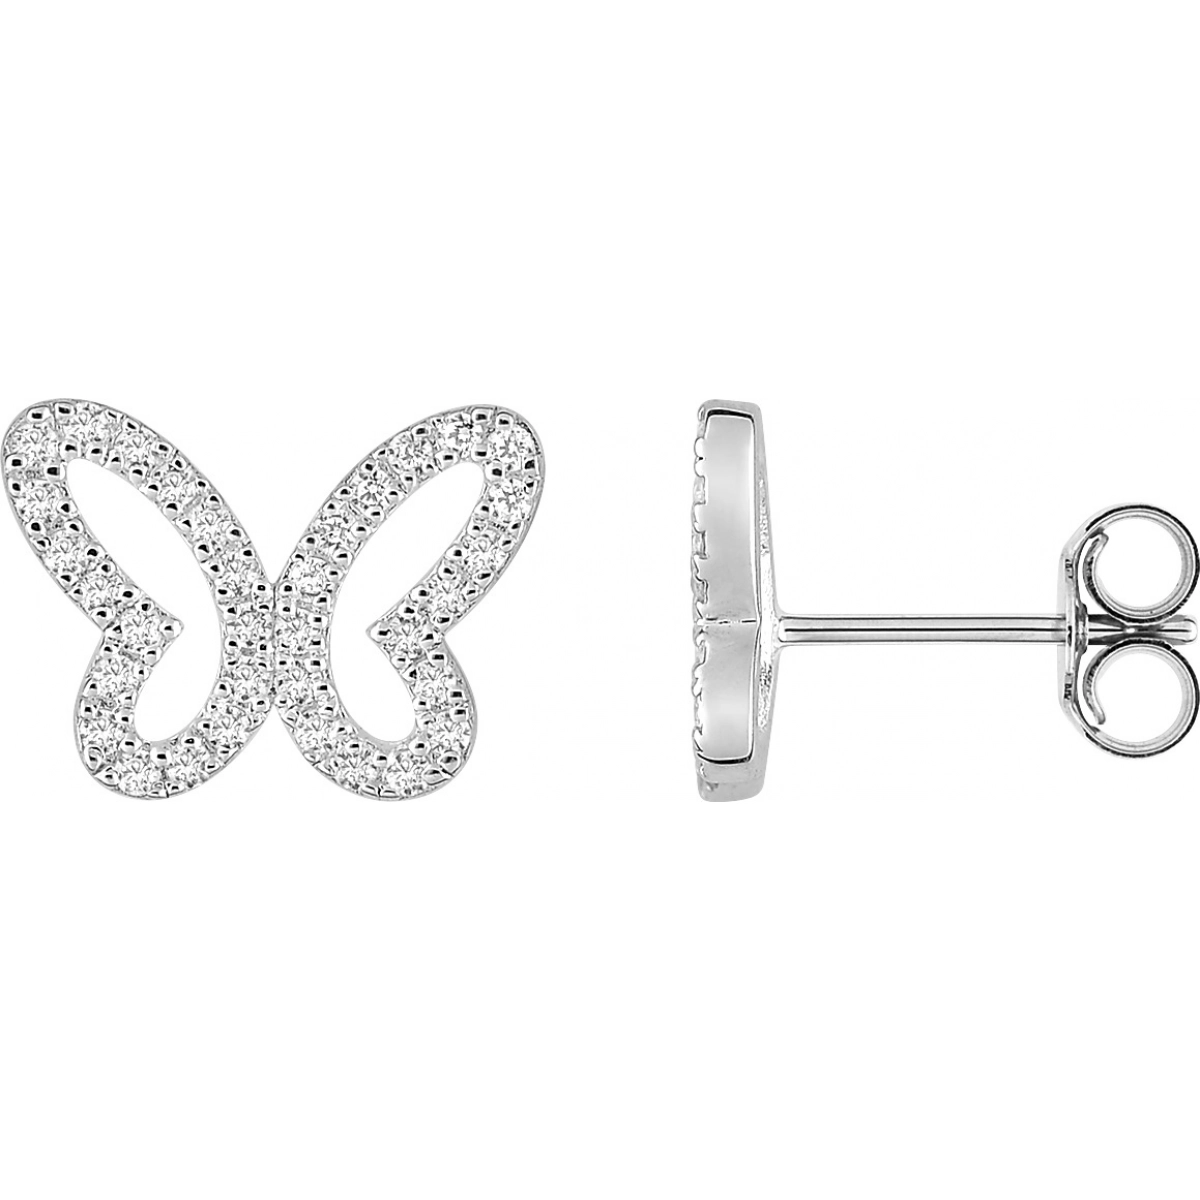 Earrings pair w. cz rh925 Silver  Lua Blanca  335743.1.0